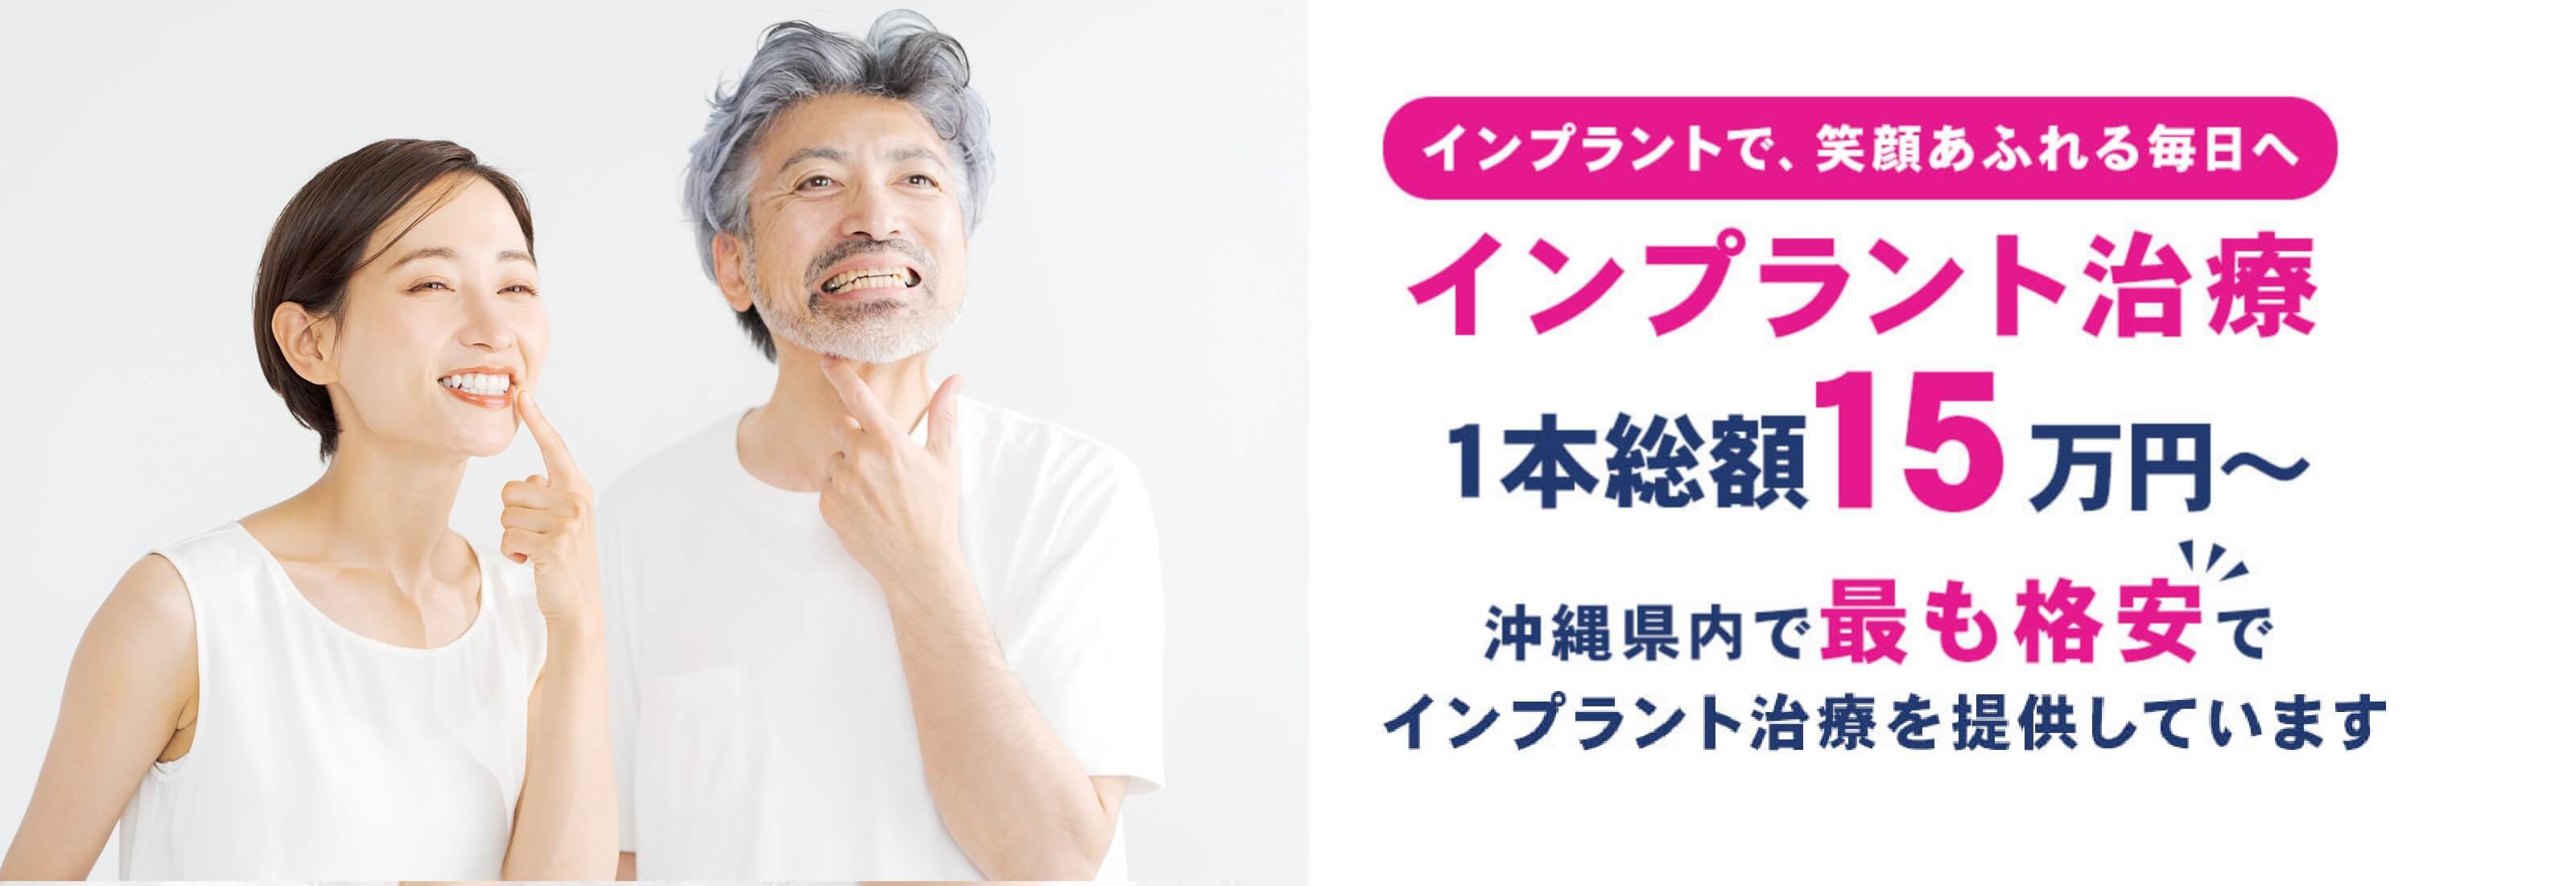 【公式】インプラント治療なら沖縄県で最も安いフレンド歯科へ